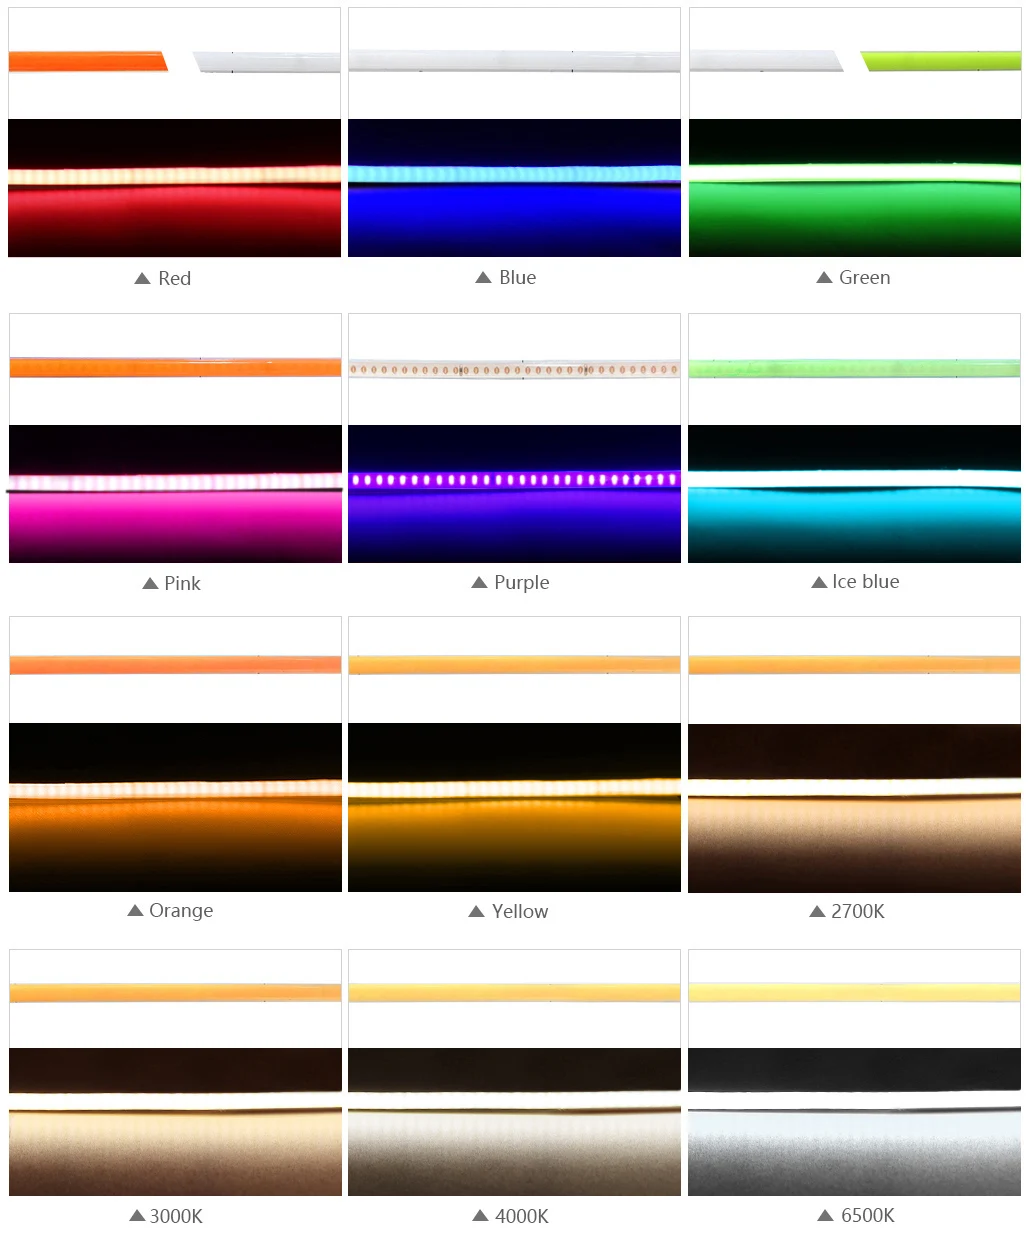 Ocona-マルチカラーcob ledストリップライトキャビネット、diyクラフト、ブルー、ピンク、赤、テープ、リボン、超薄型、480LED、4ミリメートル、dc 12v、24v